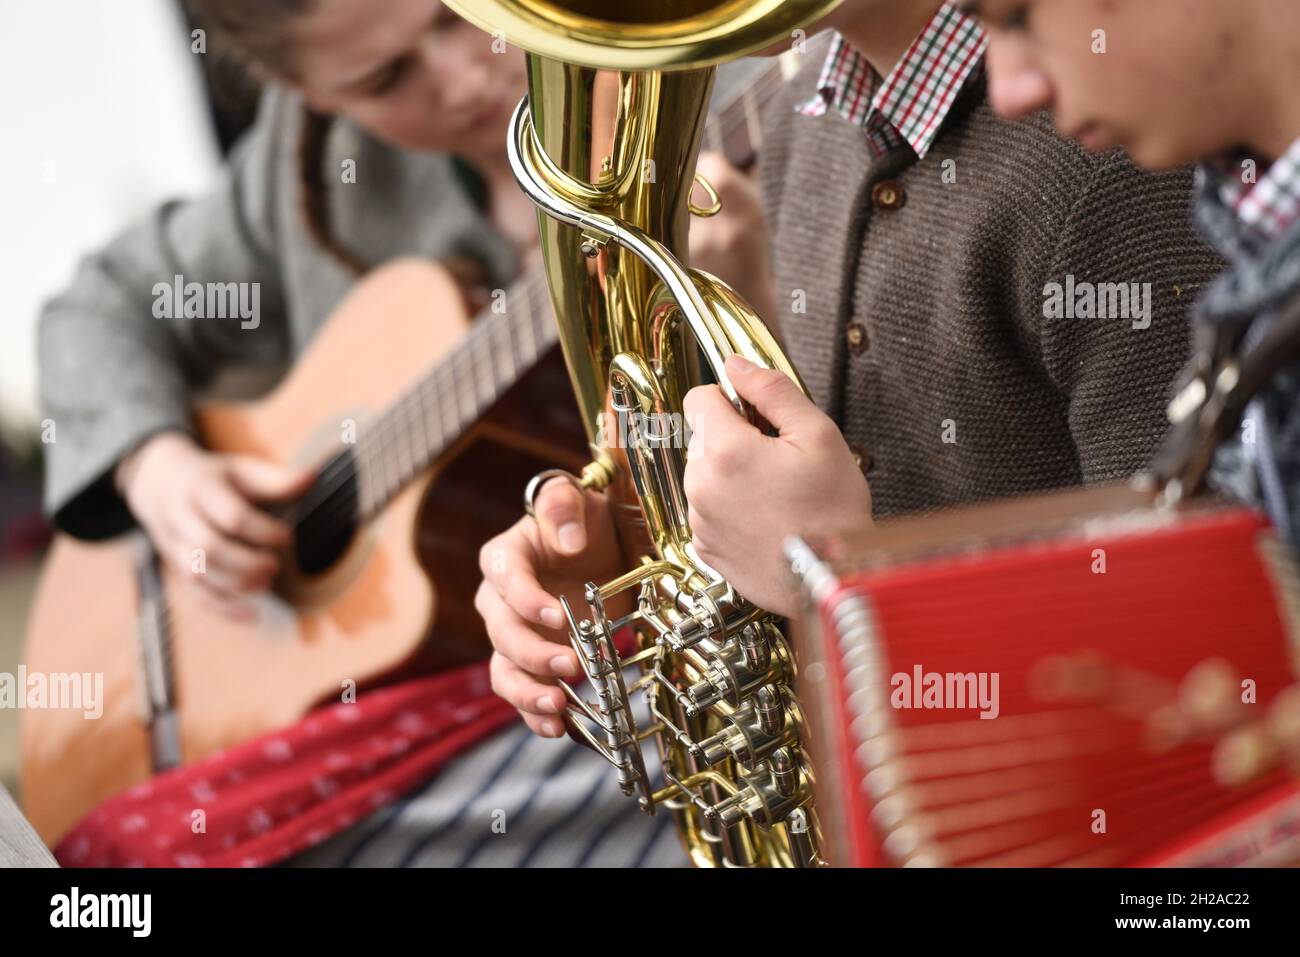 Drei junge Menschen spielen Volksmusik. - Three young people play folk music. Stock Photo